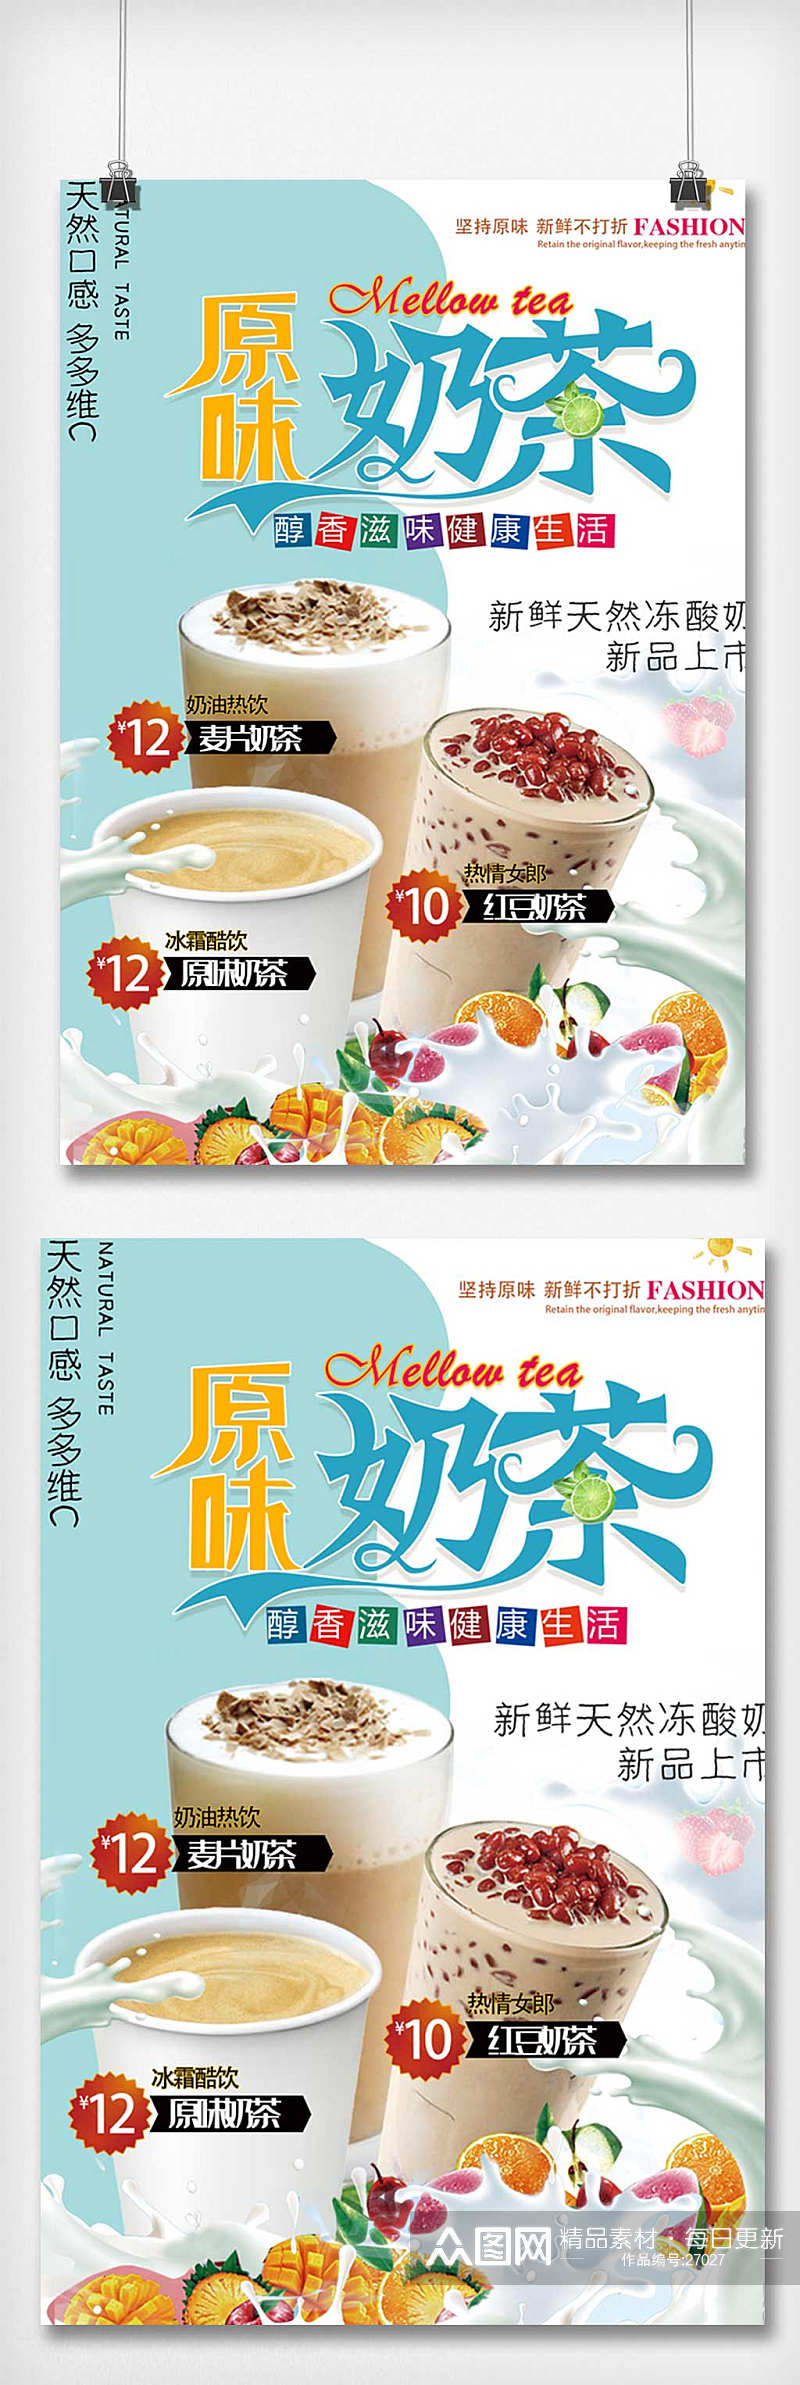 天然口感原味奶茶新品上市宣传海报素材